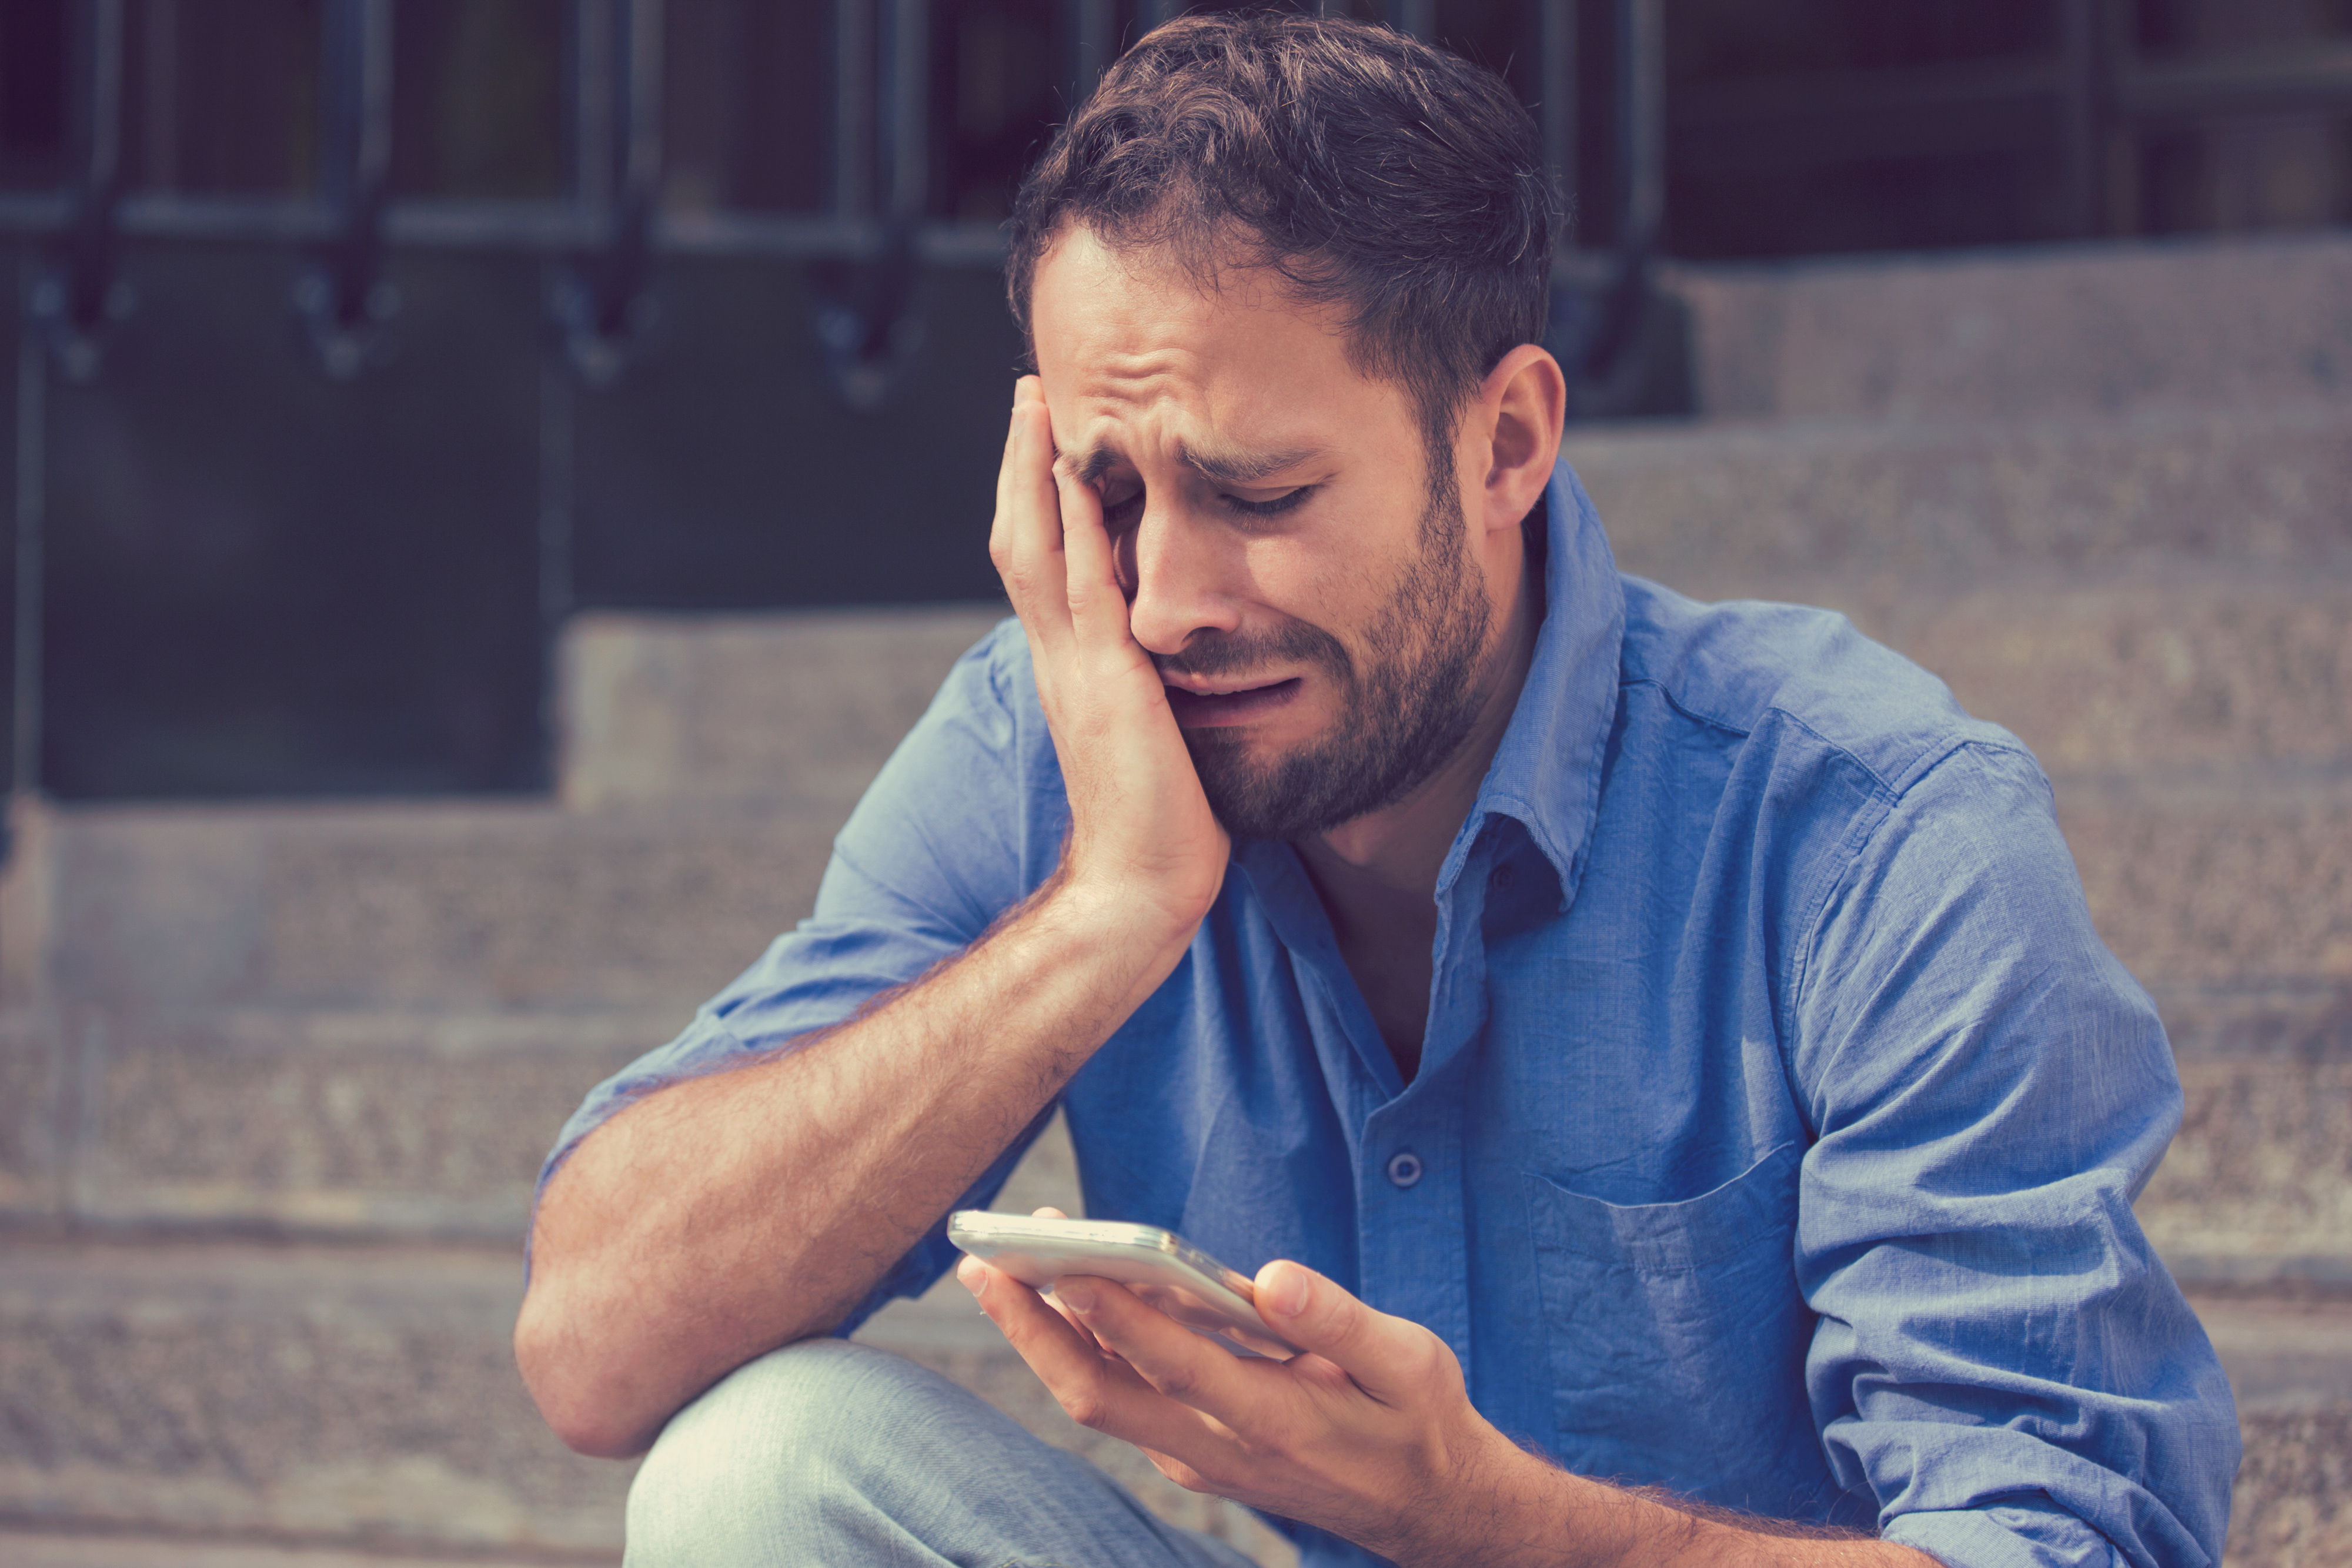 An upset man using a phone | Source: Shutterstock